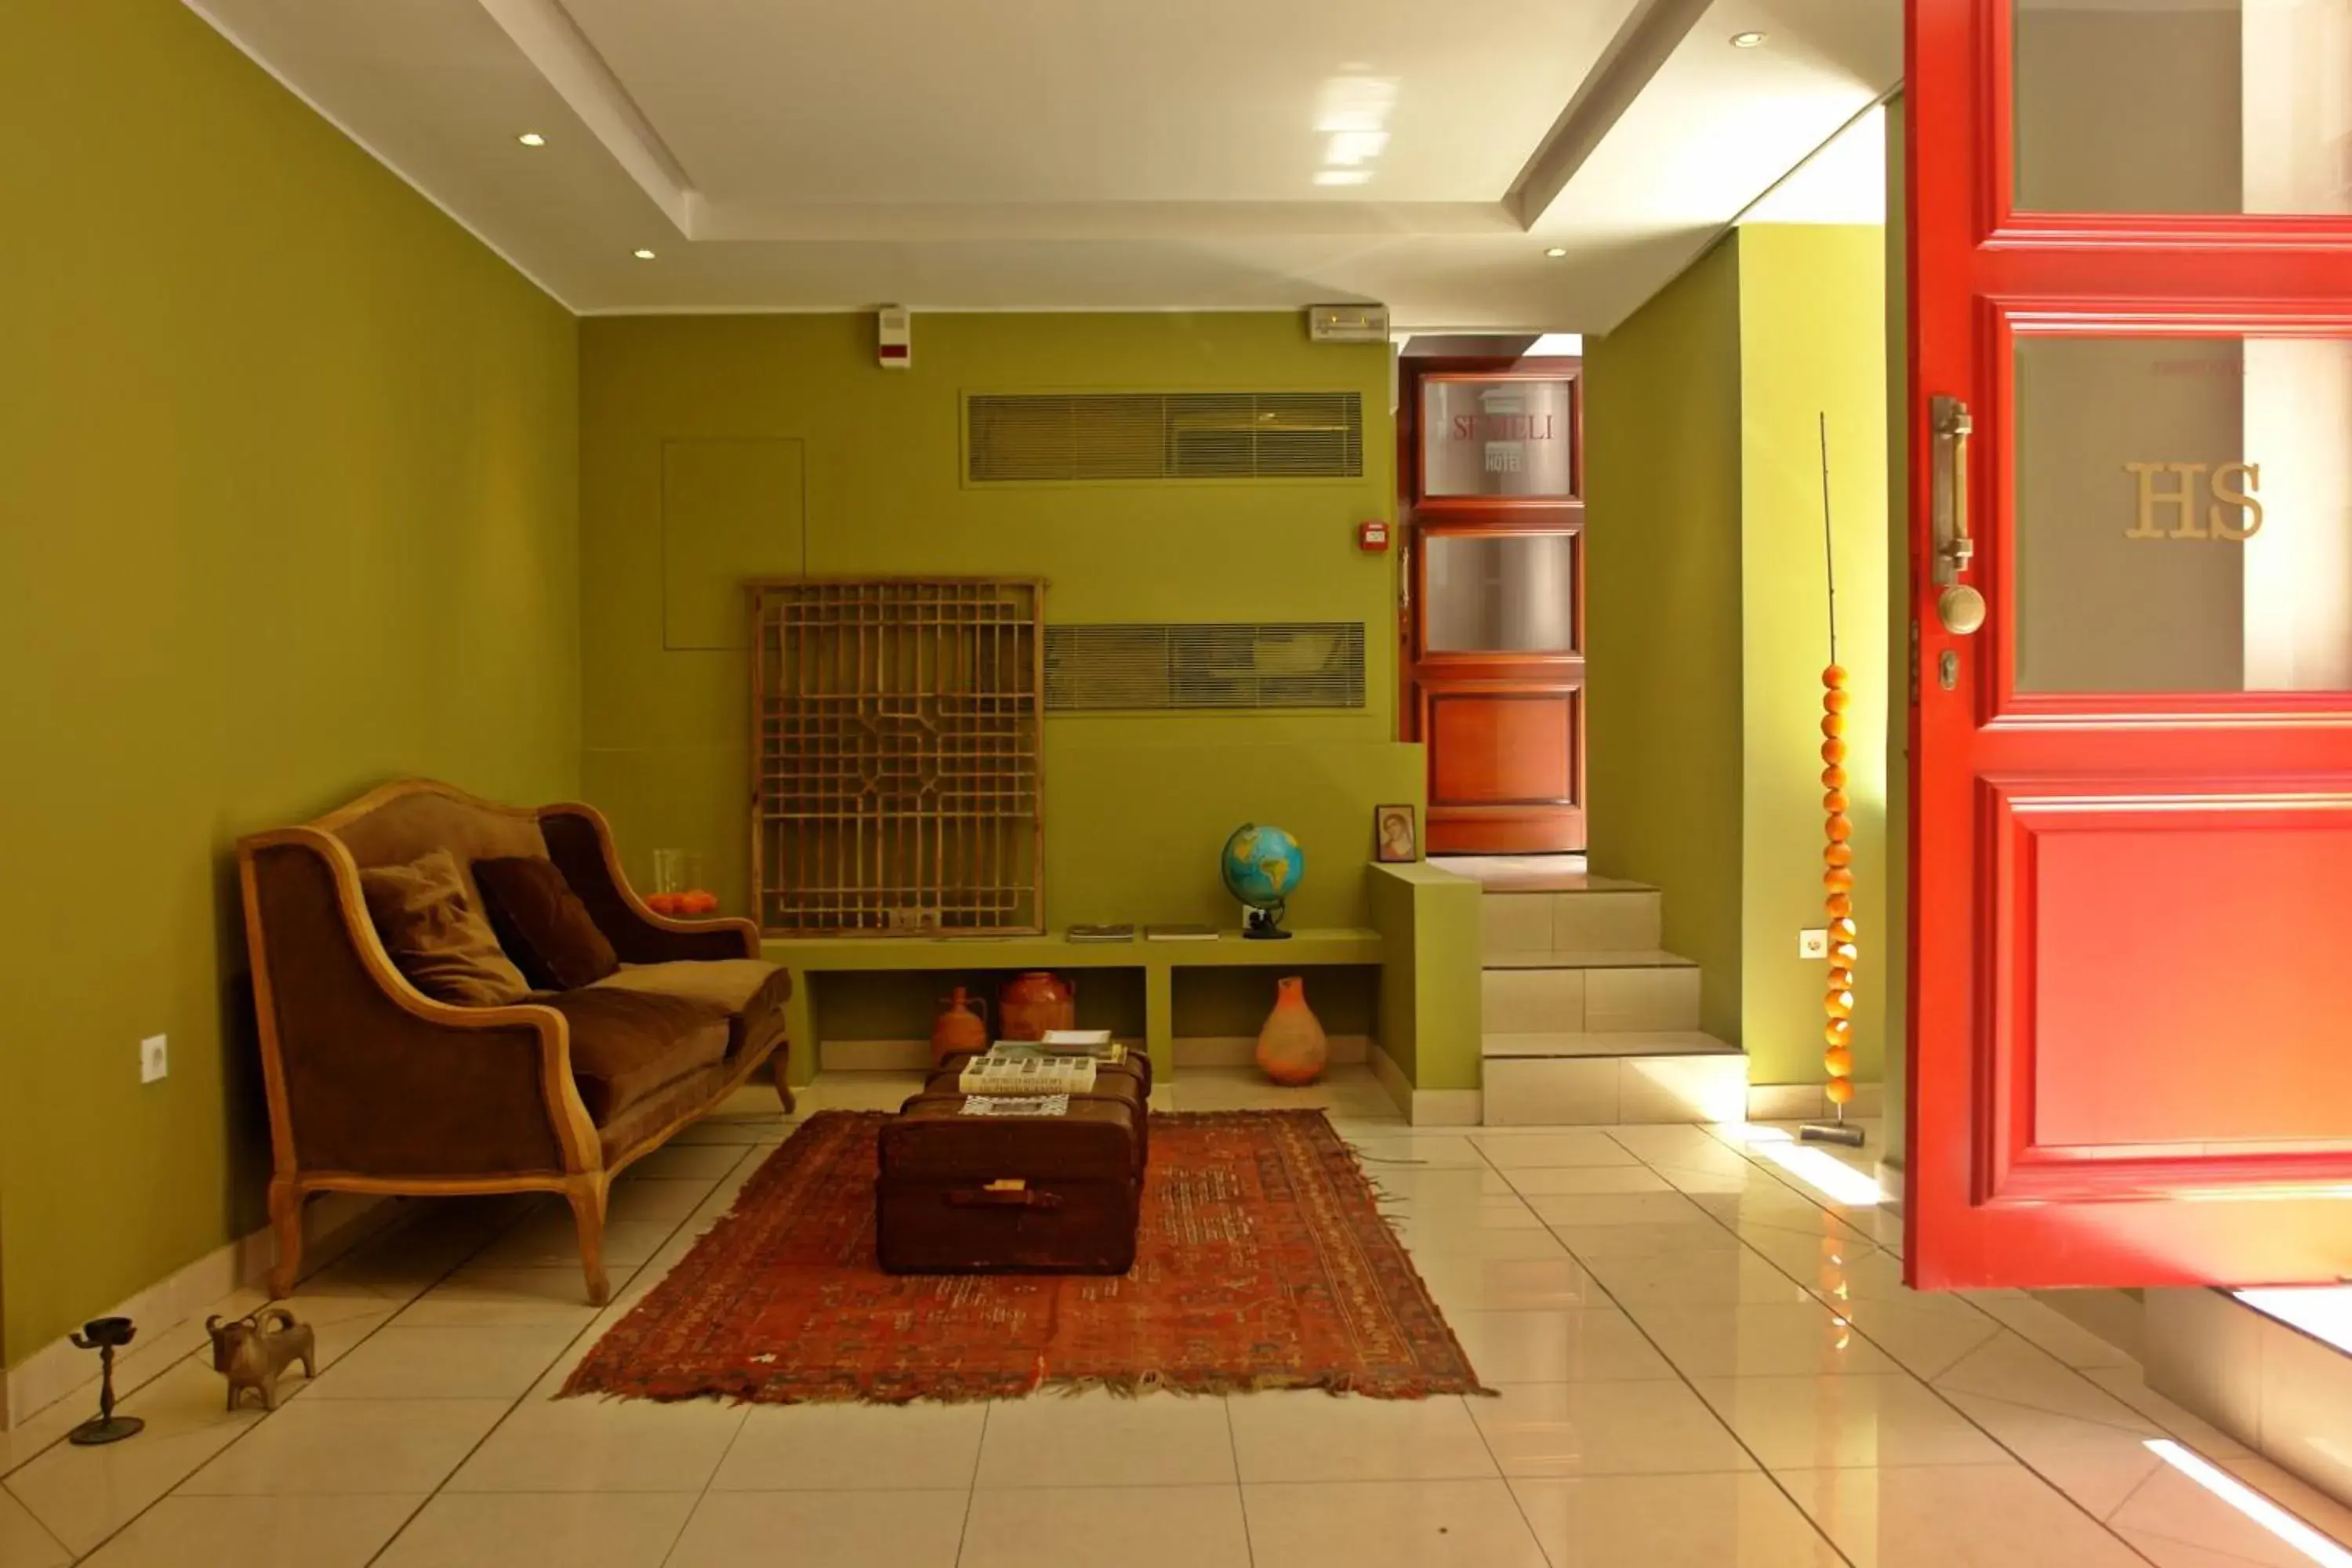 Lobby or reception, Lobby/Reception in Semeli Hotel